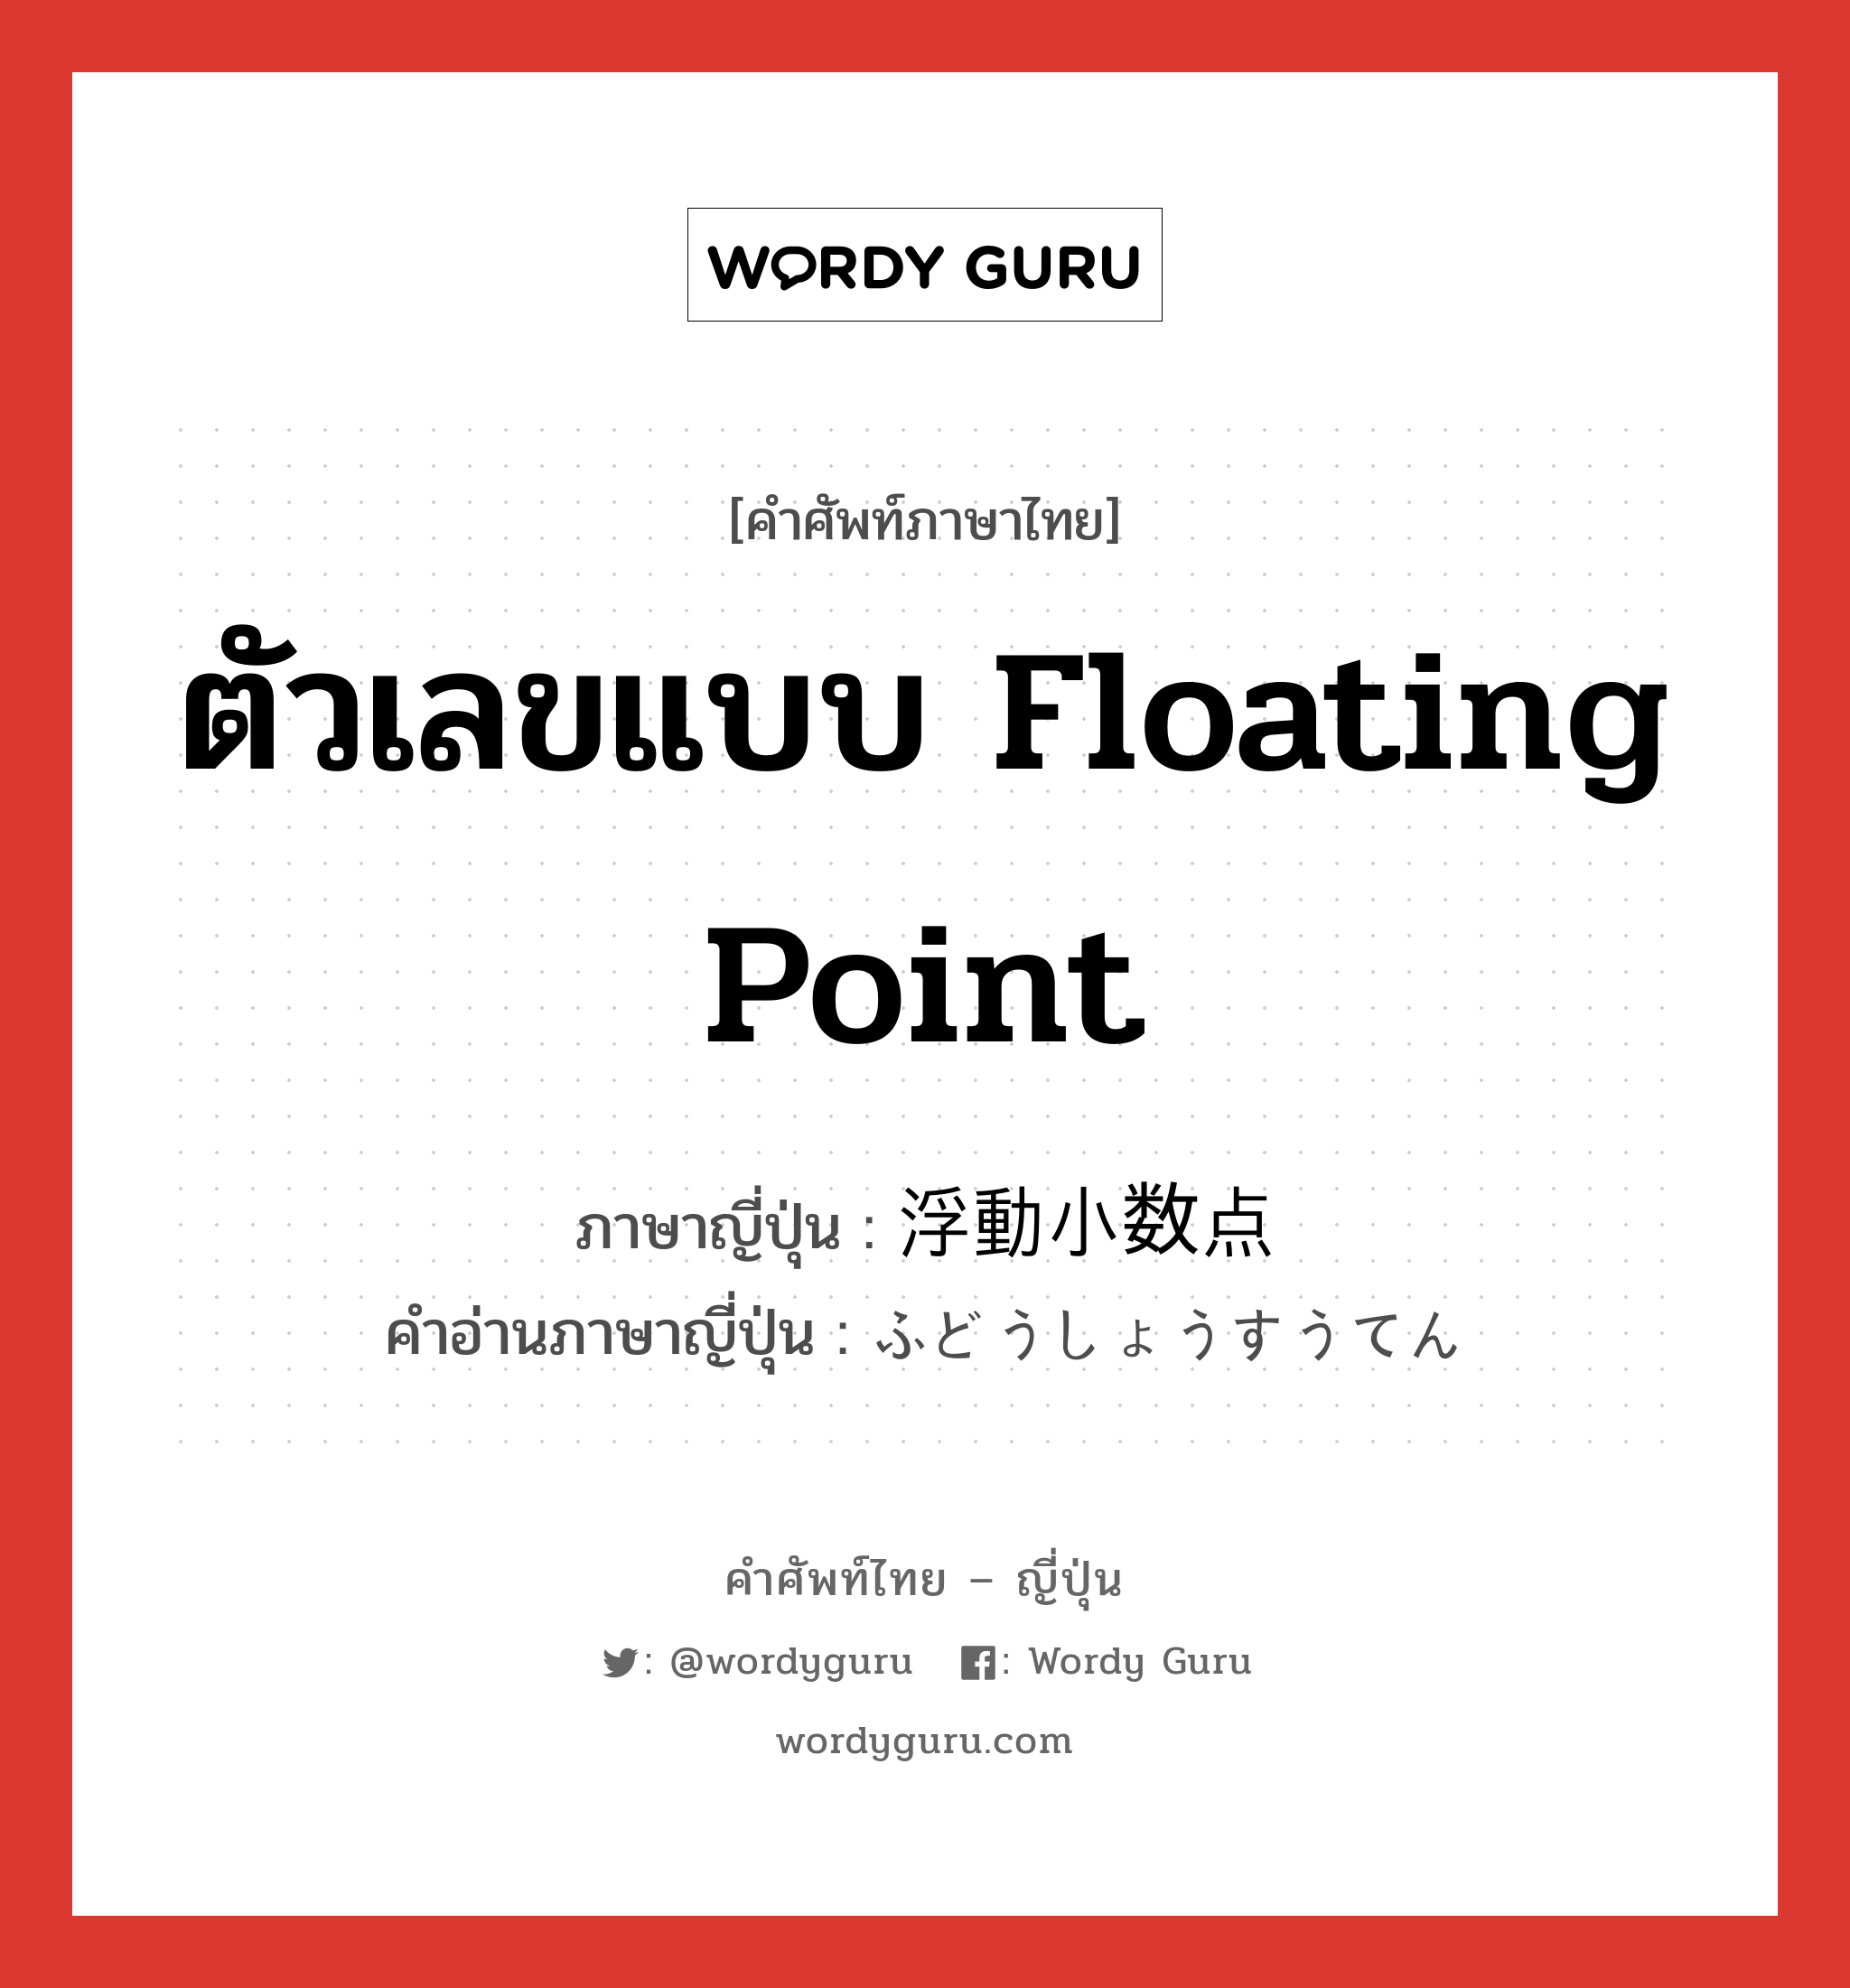 ตัวเลขแบบ floating point ภาษาญี่ปุ่นคืออะไร, คำศัพท์ภาษาไทย - ญี่ปุ่น ตัวเลขแบบ floating point ภาษาญี่ปุ่น 浮動小数点 คำอ่านภาษาญี่ปุ่น ふどうしょうすうてん หมวด n หมวด n